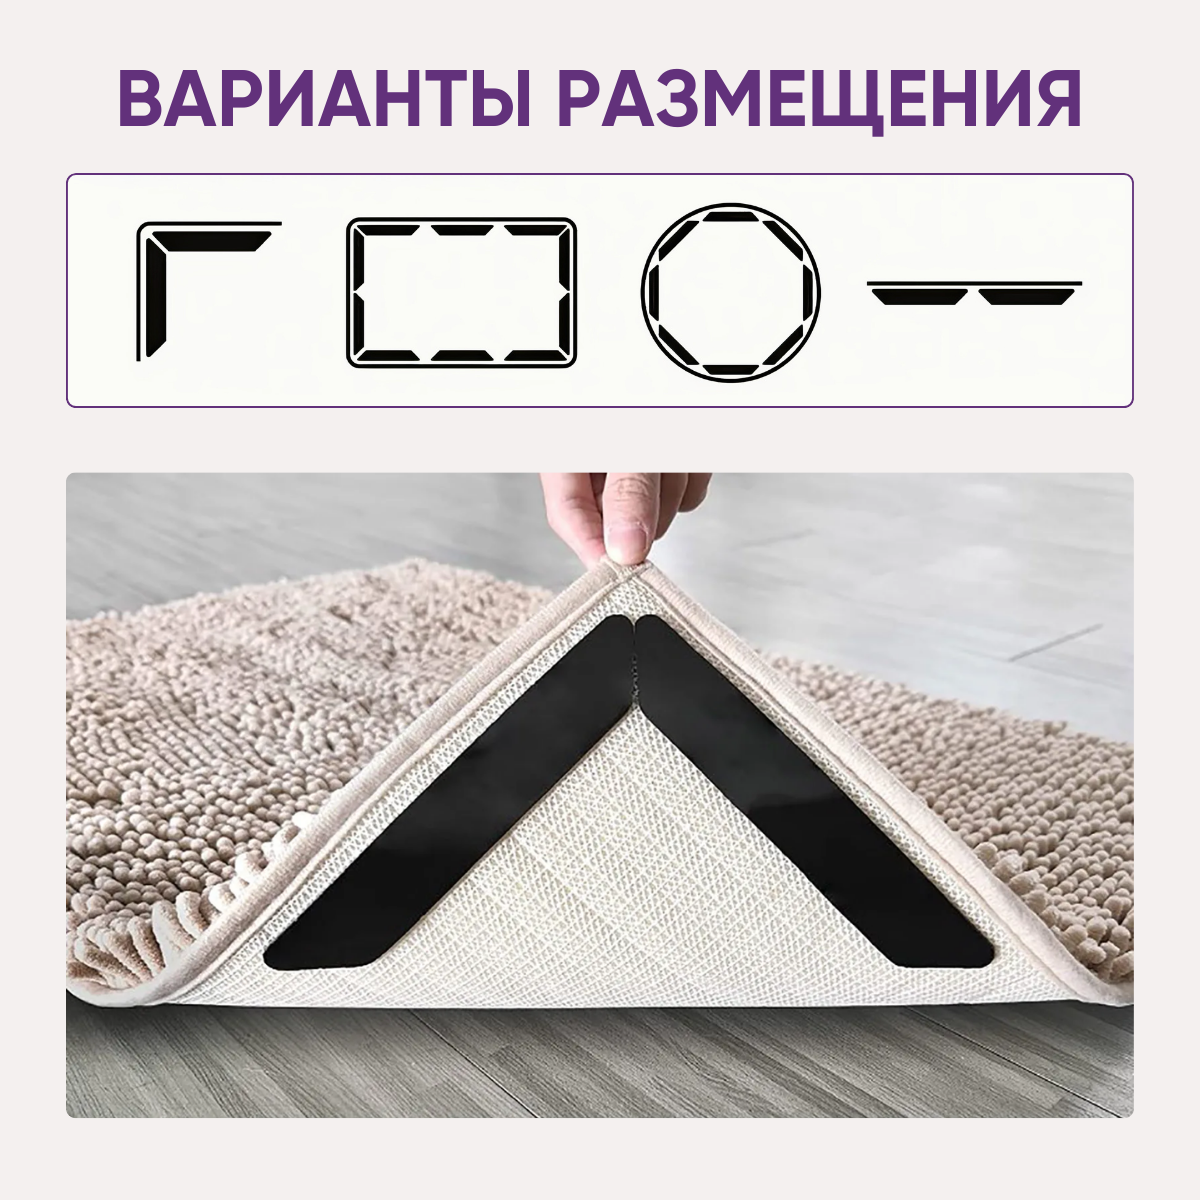 Фиксаторы противоскользящие для ковров 8 шт / Против скольжения на половых покрытиях / Наклейки ковровые